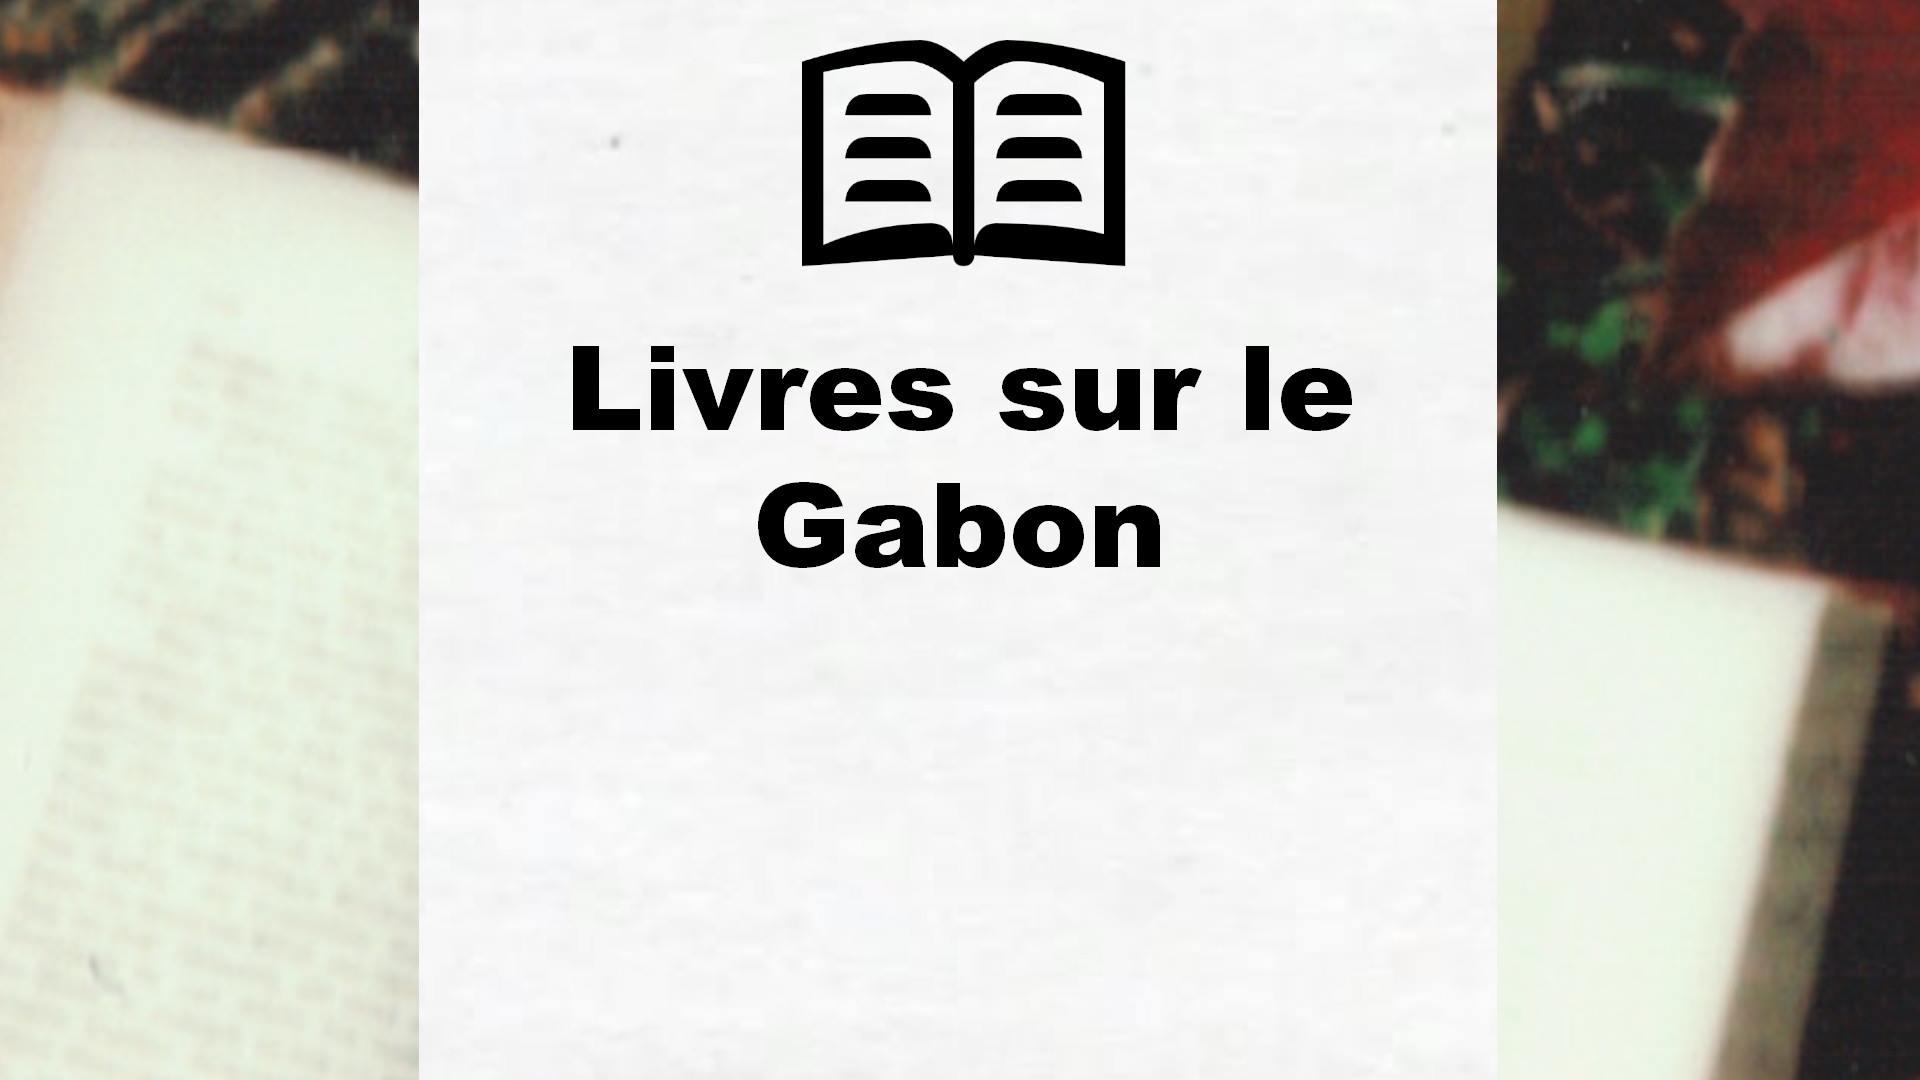 Livres sur le Gabon